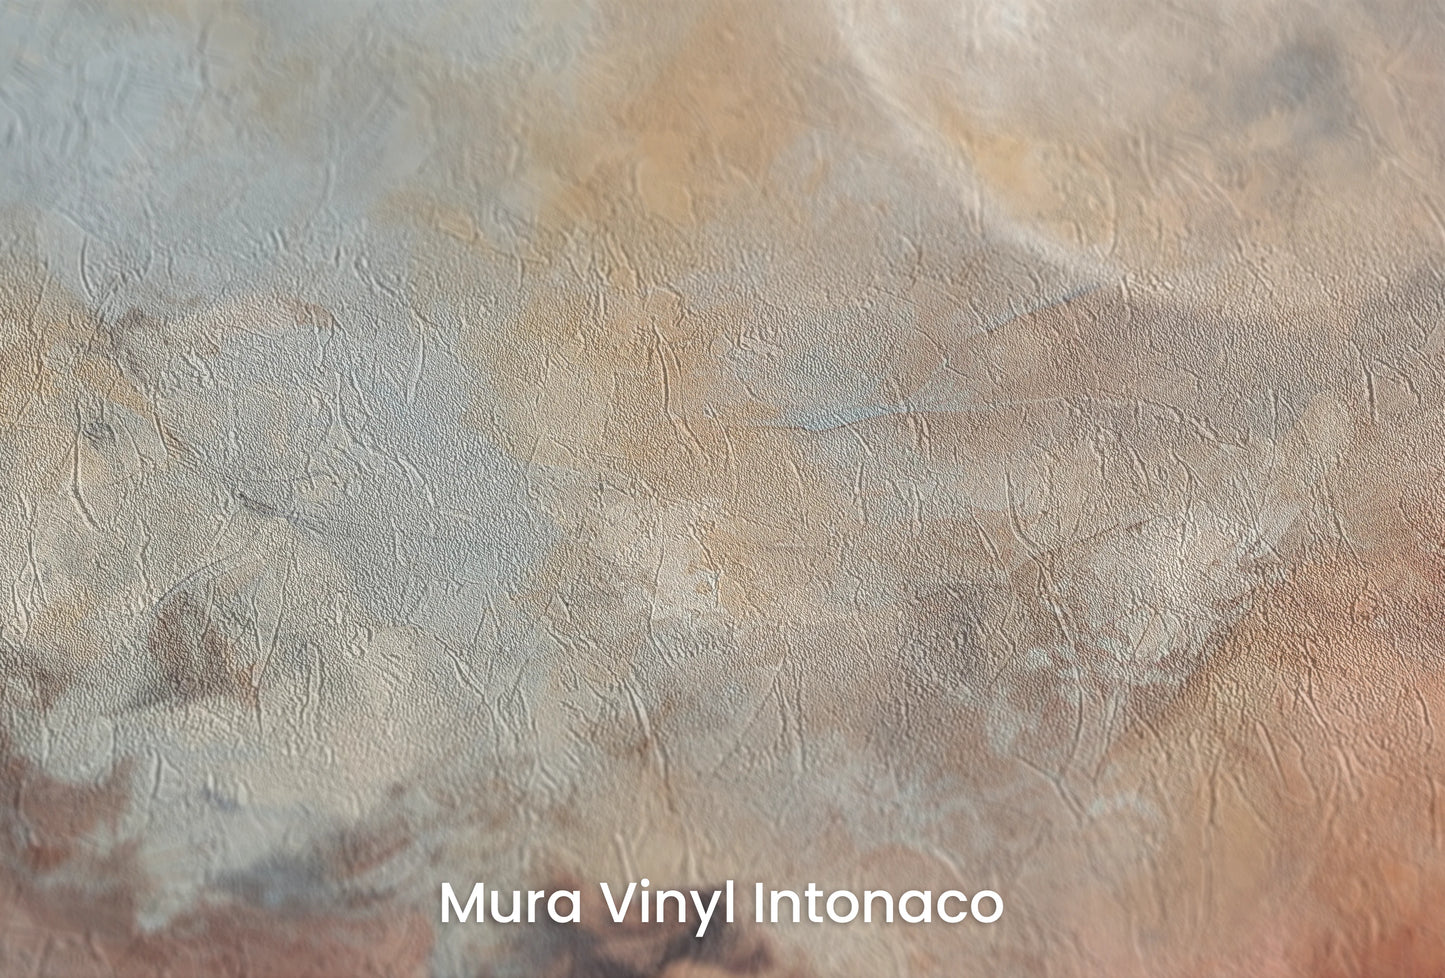 Zbliżenie na artystyczną fototapetę o nazwie Moon's Monochrome na podłożu Mura Vinyl Intonaco - struktura tartego tynku.